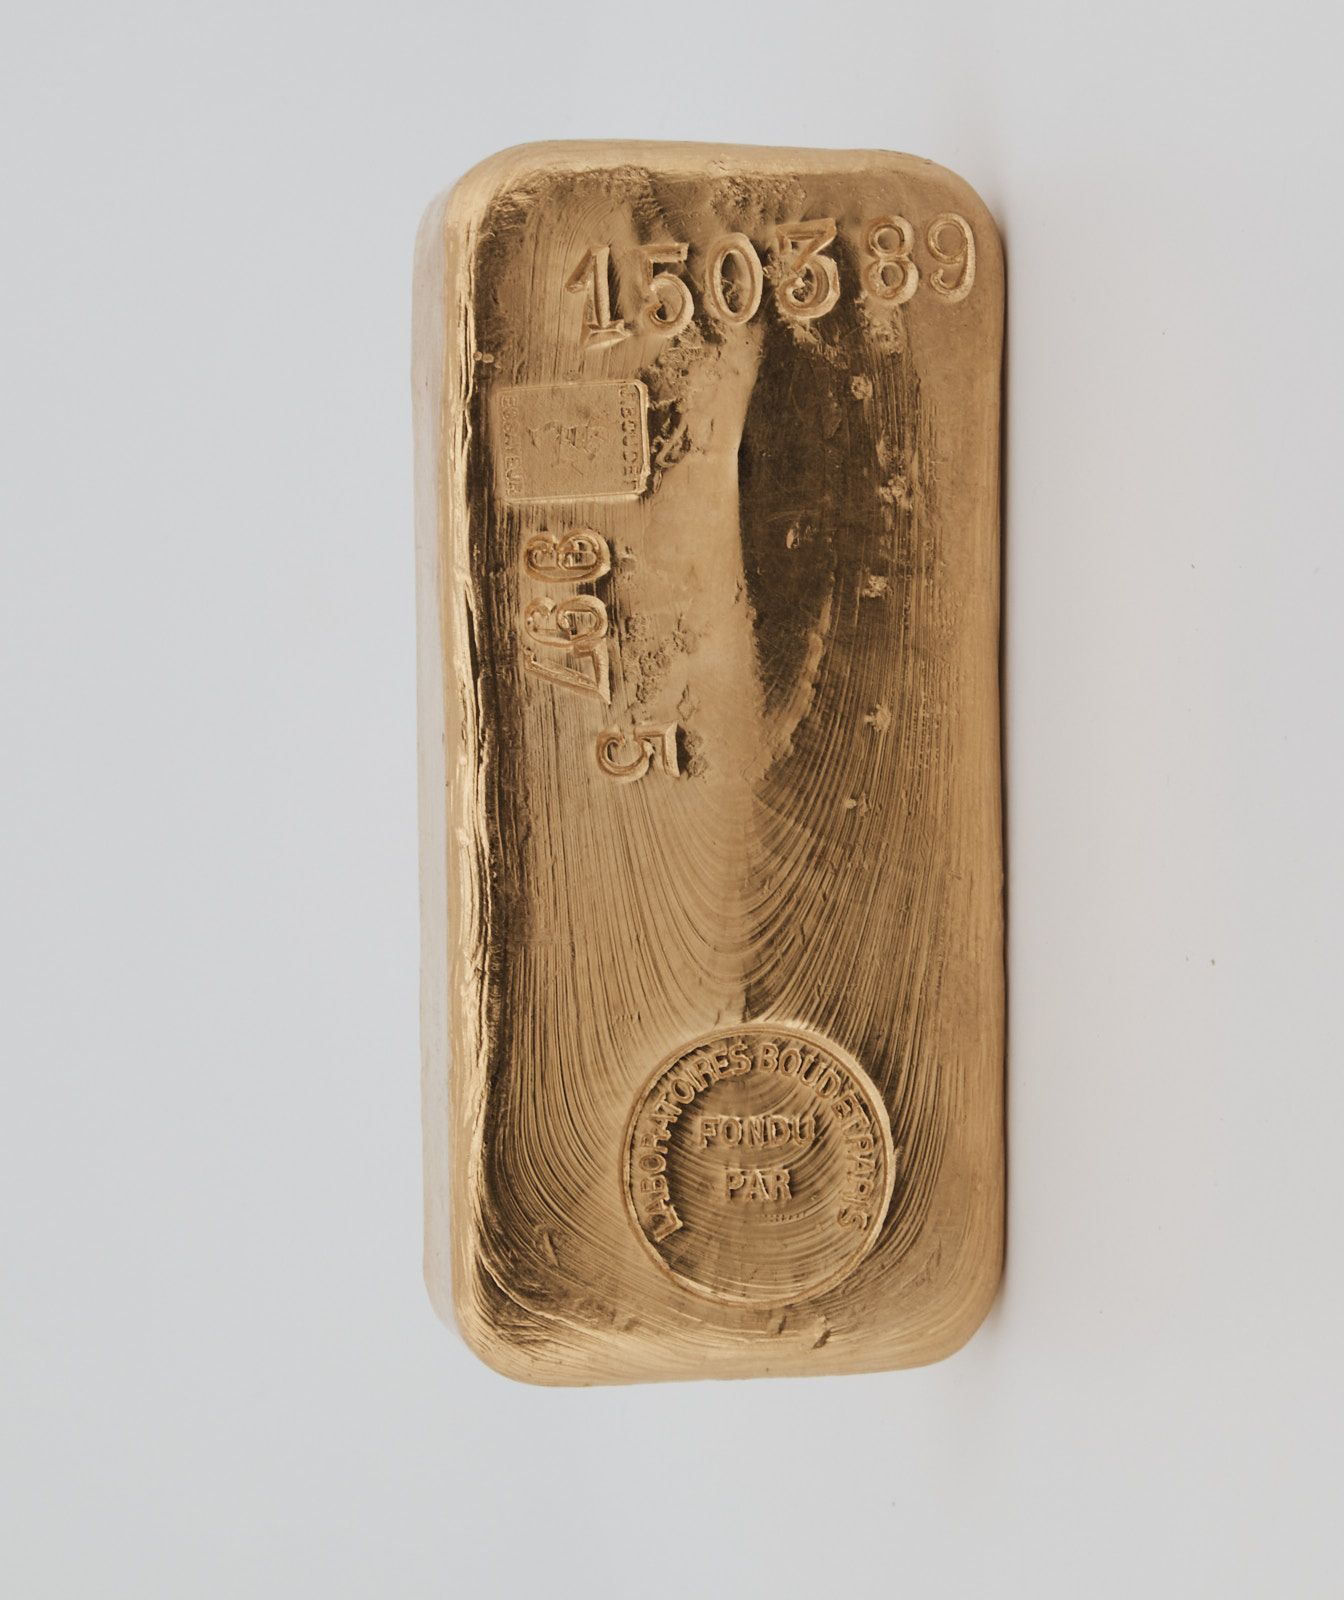 200- Lingot d'or de 987,5g numéroté 150389- sans bulletin- Laboratoire BOUDET